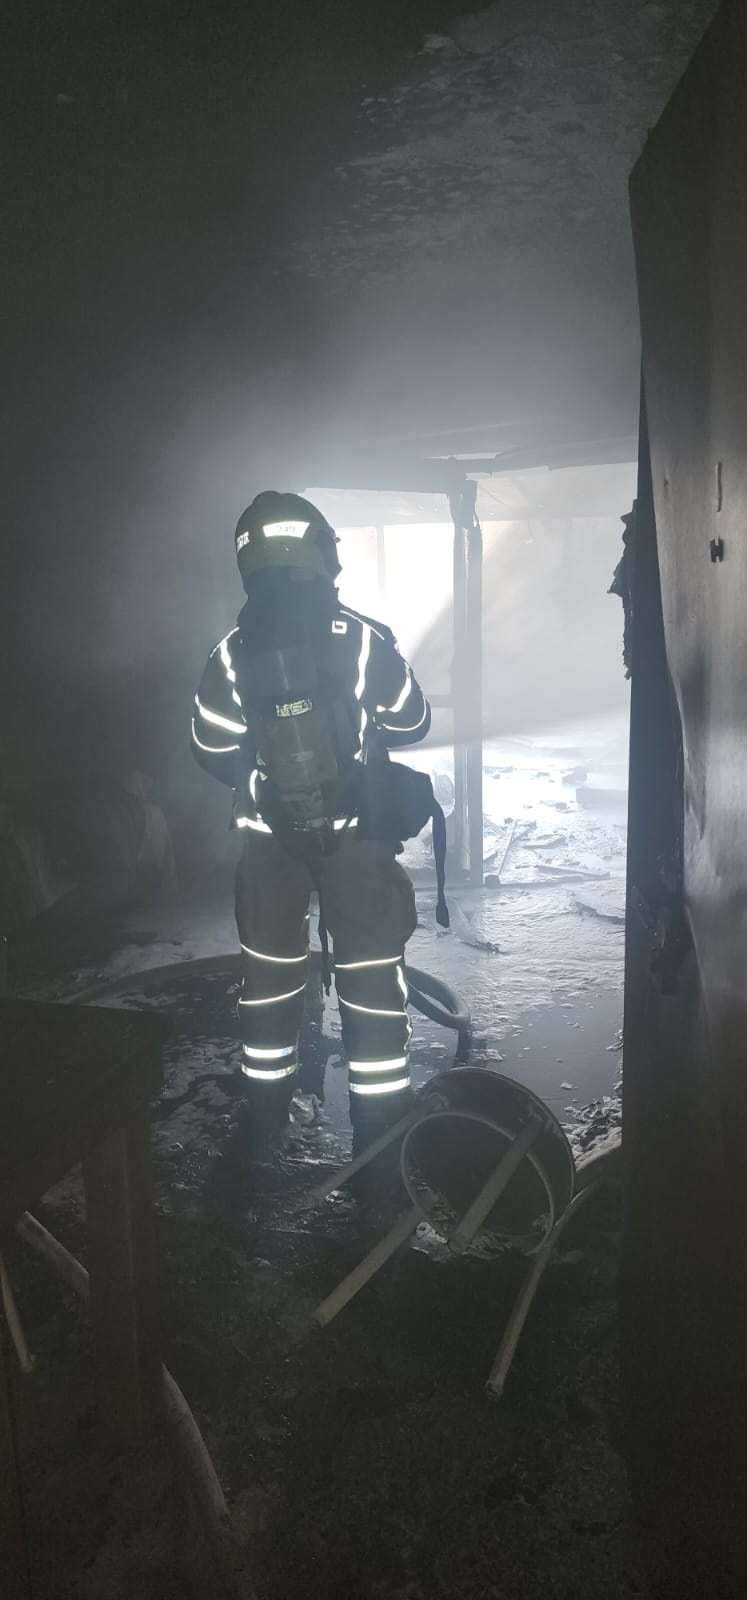 اللد: حريق داخل أحد المنازل في حي جني افيف 